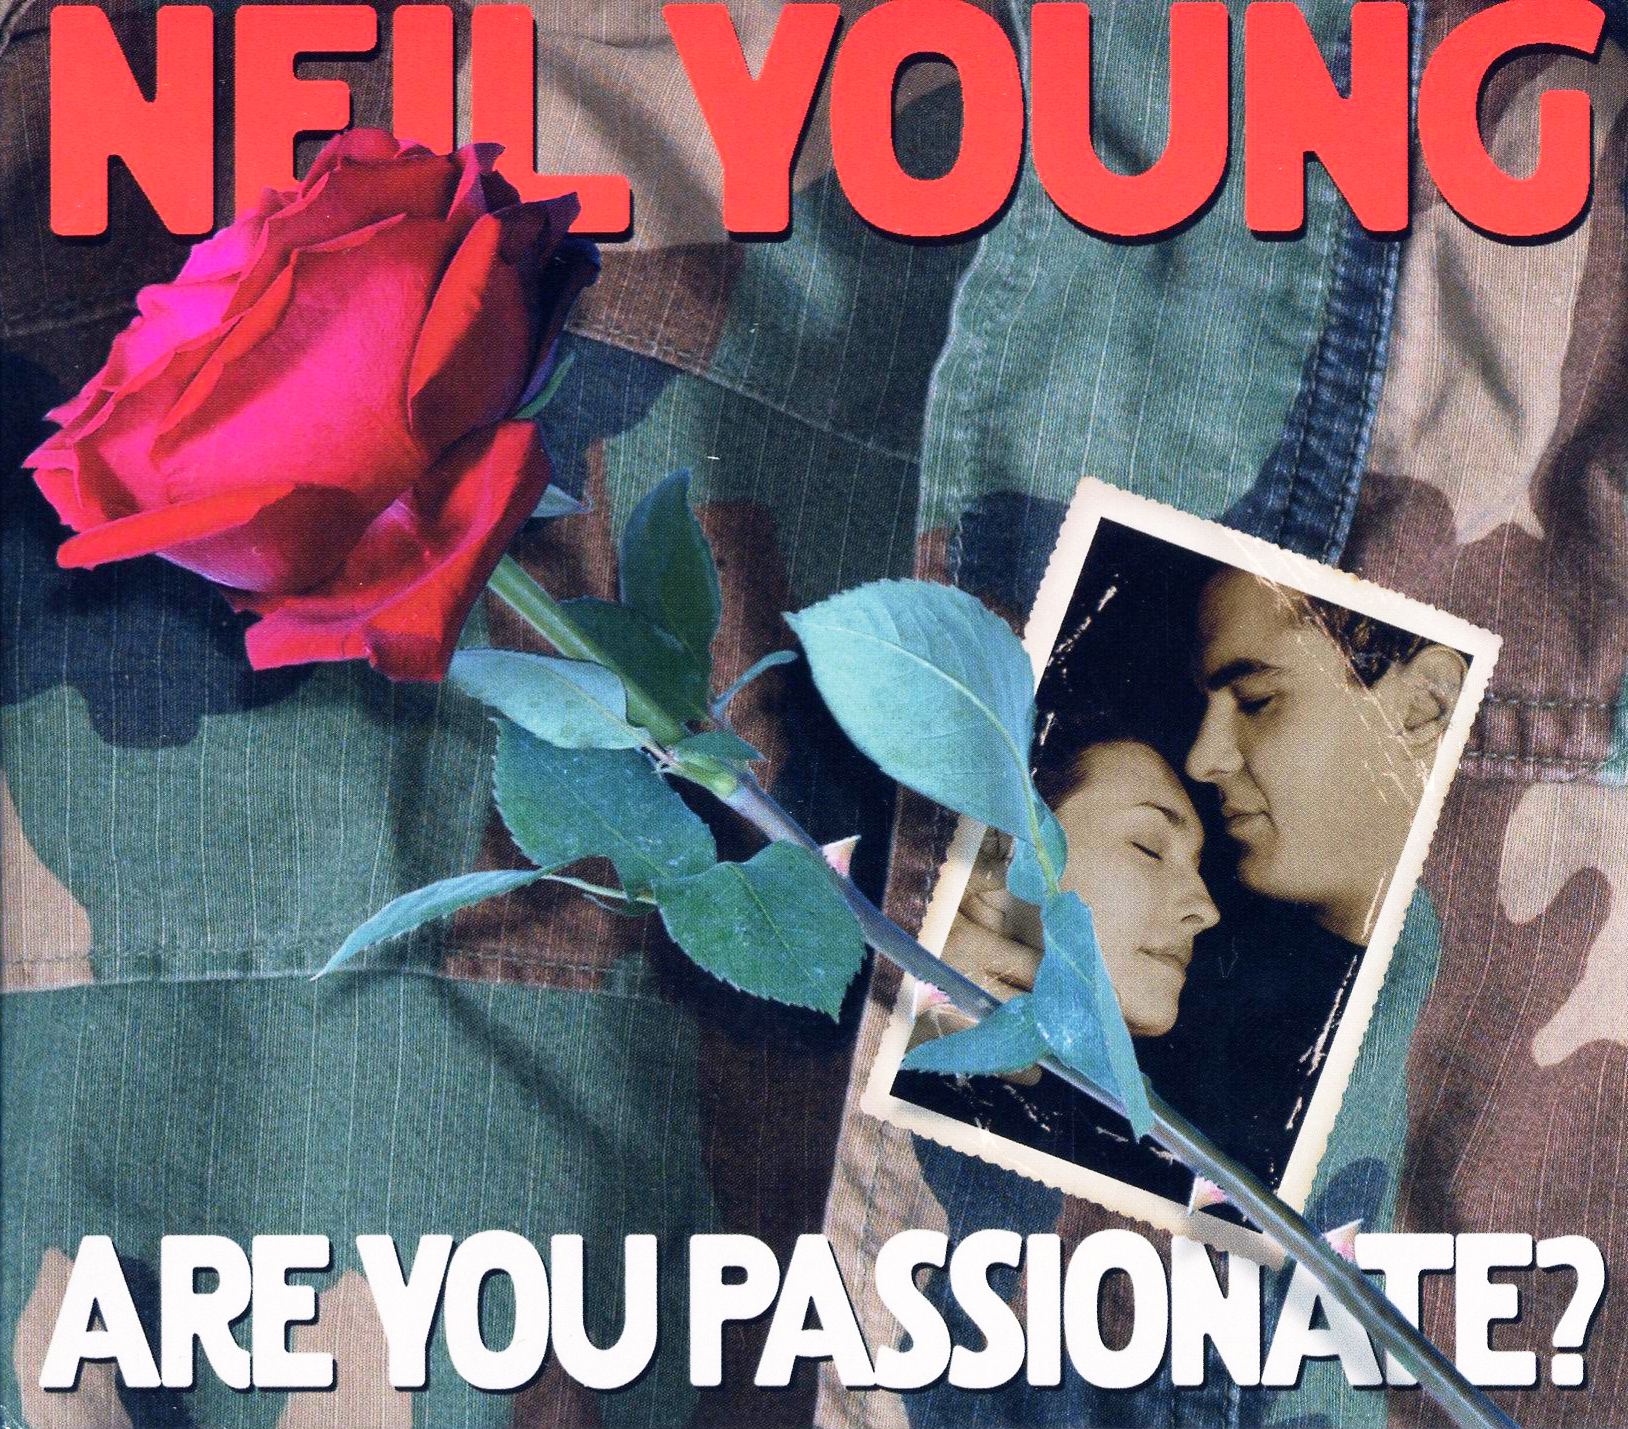 ซีดีเพลง CD Neil Young & crazy horse album 2002 Are You Passionate,ในราคาพิเศษสุดเพียง159บาท